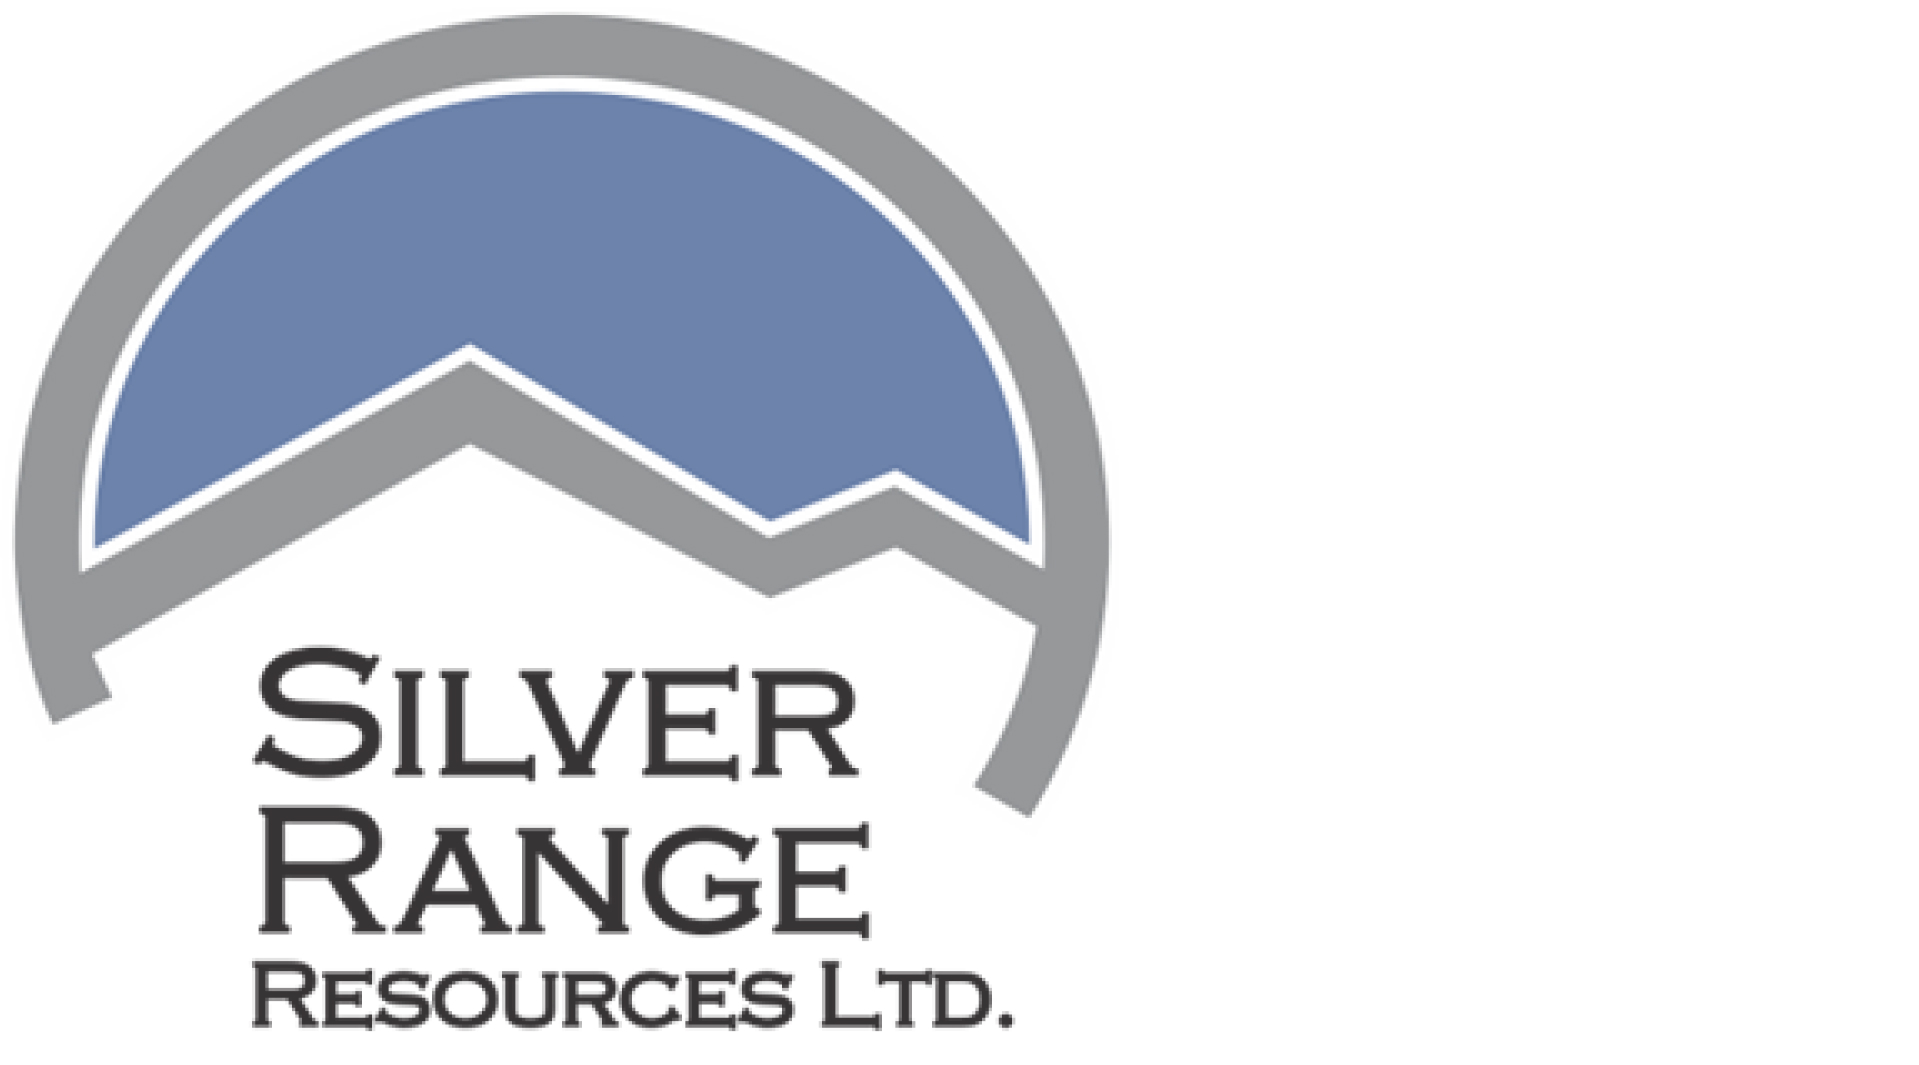 Silver Range Resources Ltd.